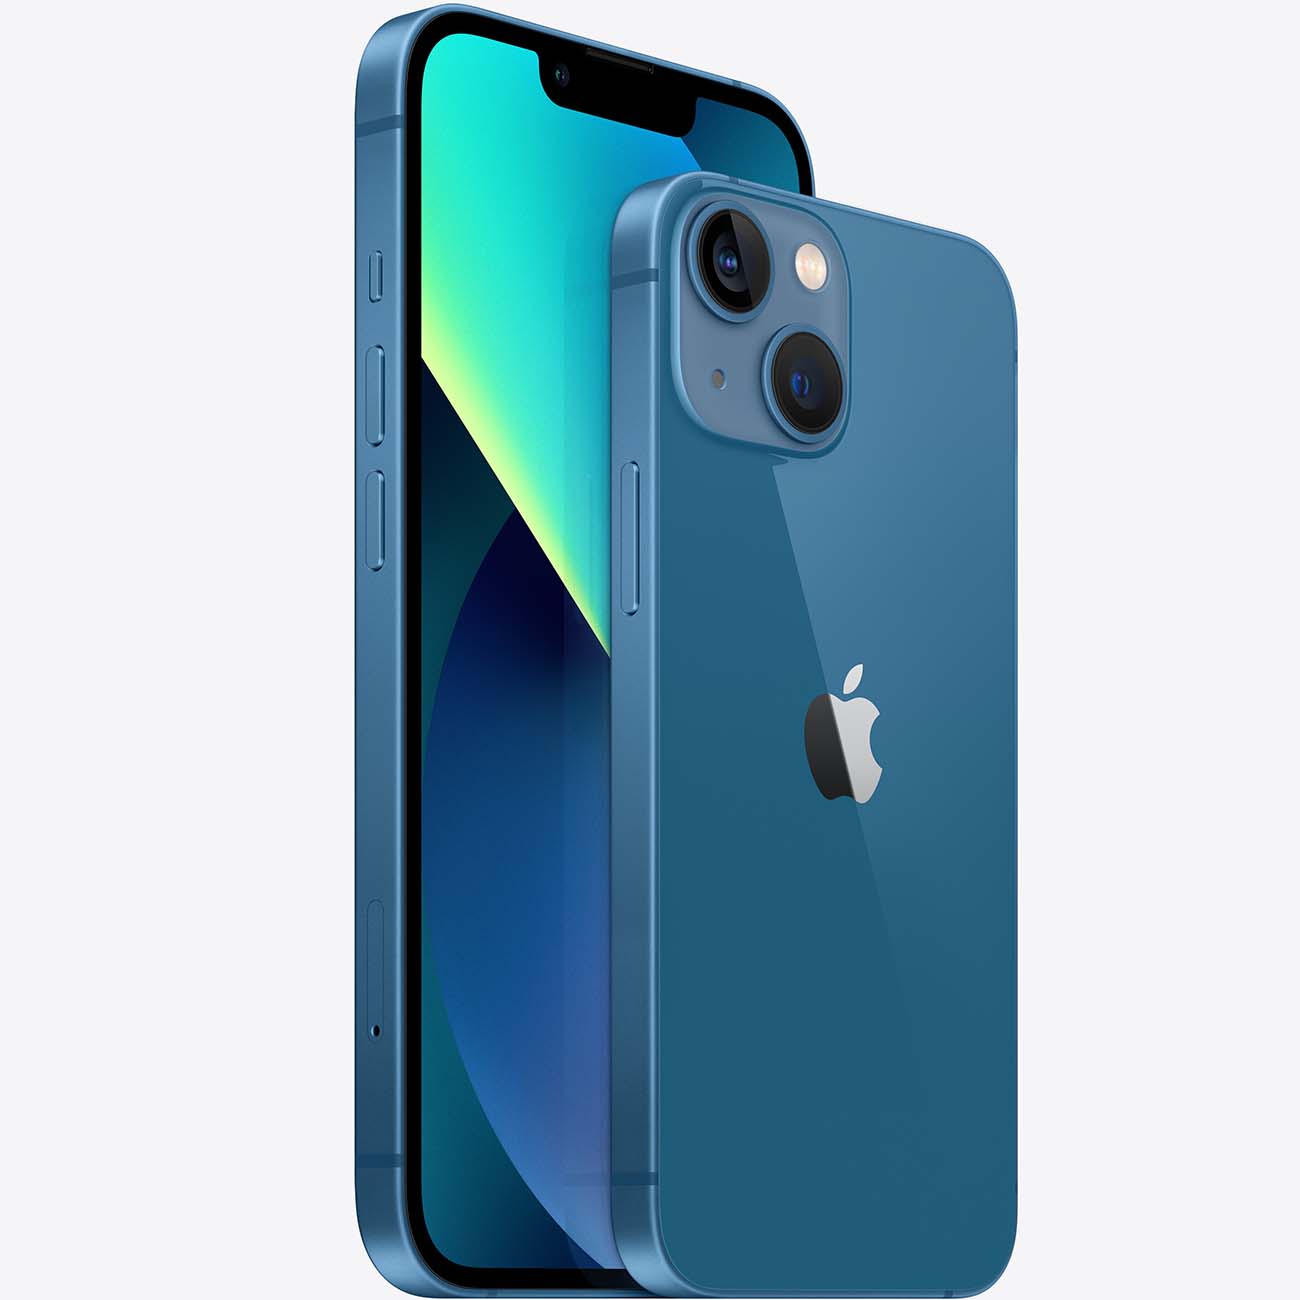 Купить смартфон apple iphone 13 256gb blue Apple iPhone 13 в официальном магазине Apple, Samsung, Xiaomi. iPixel.ru Купить, заказ, кредит, рассрочка, отзывы,  характеристики, цена,  фотографии, в подарок.